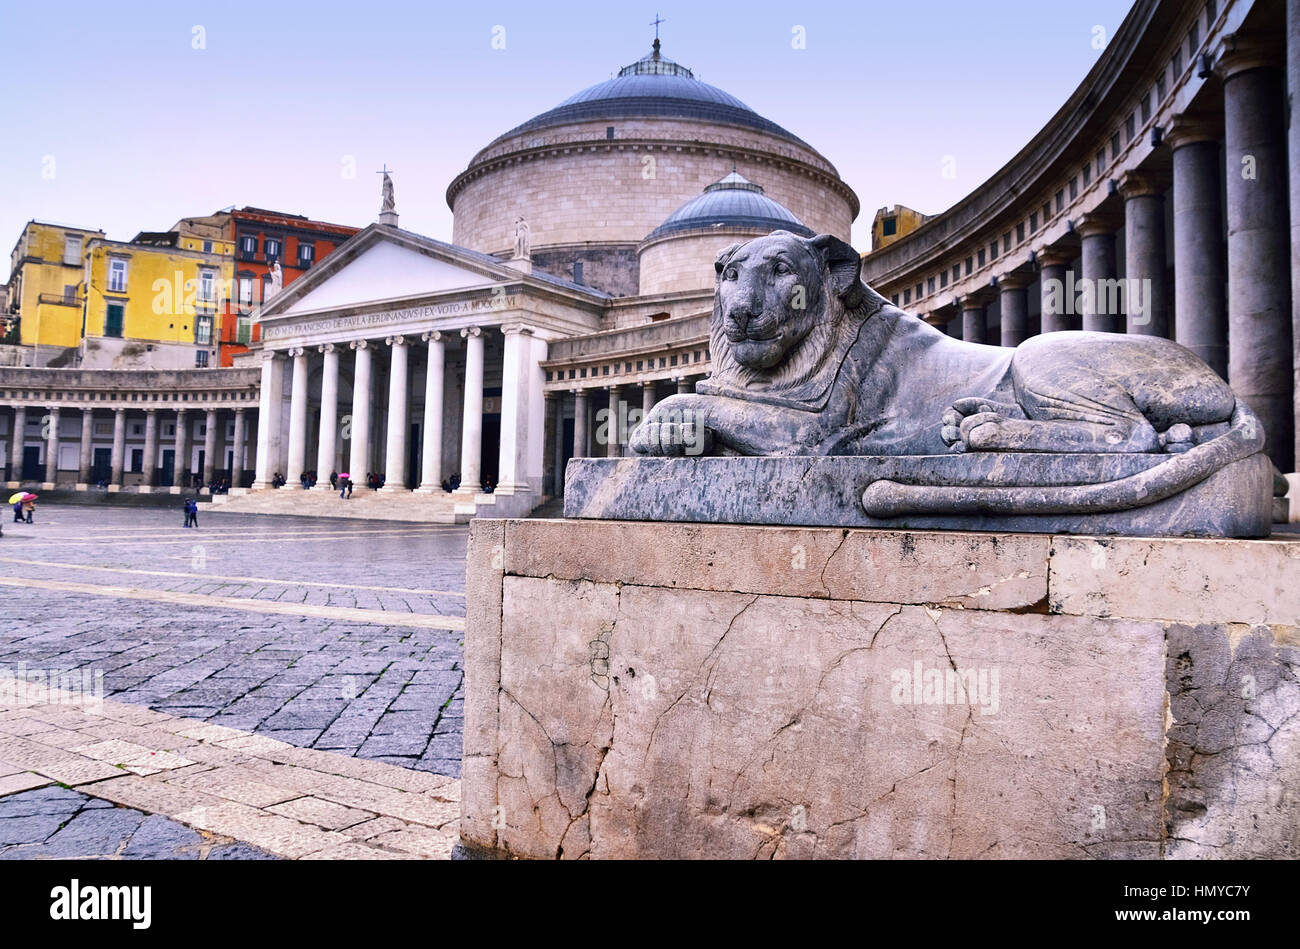 The Piazza del Plebiscito with Church of San Francesco di Paola, Naples, Italy. Stock Photo